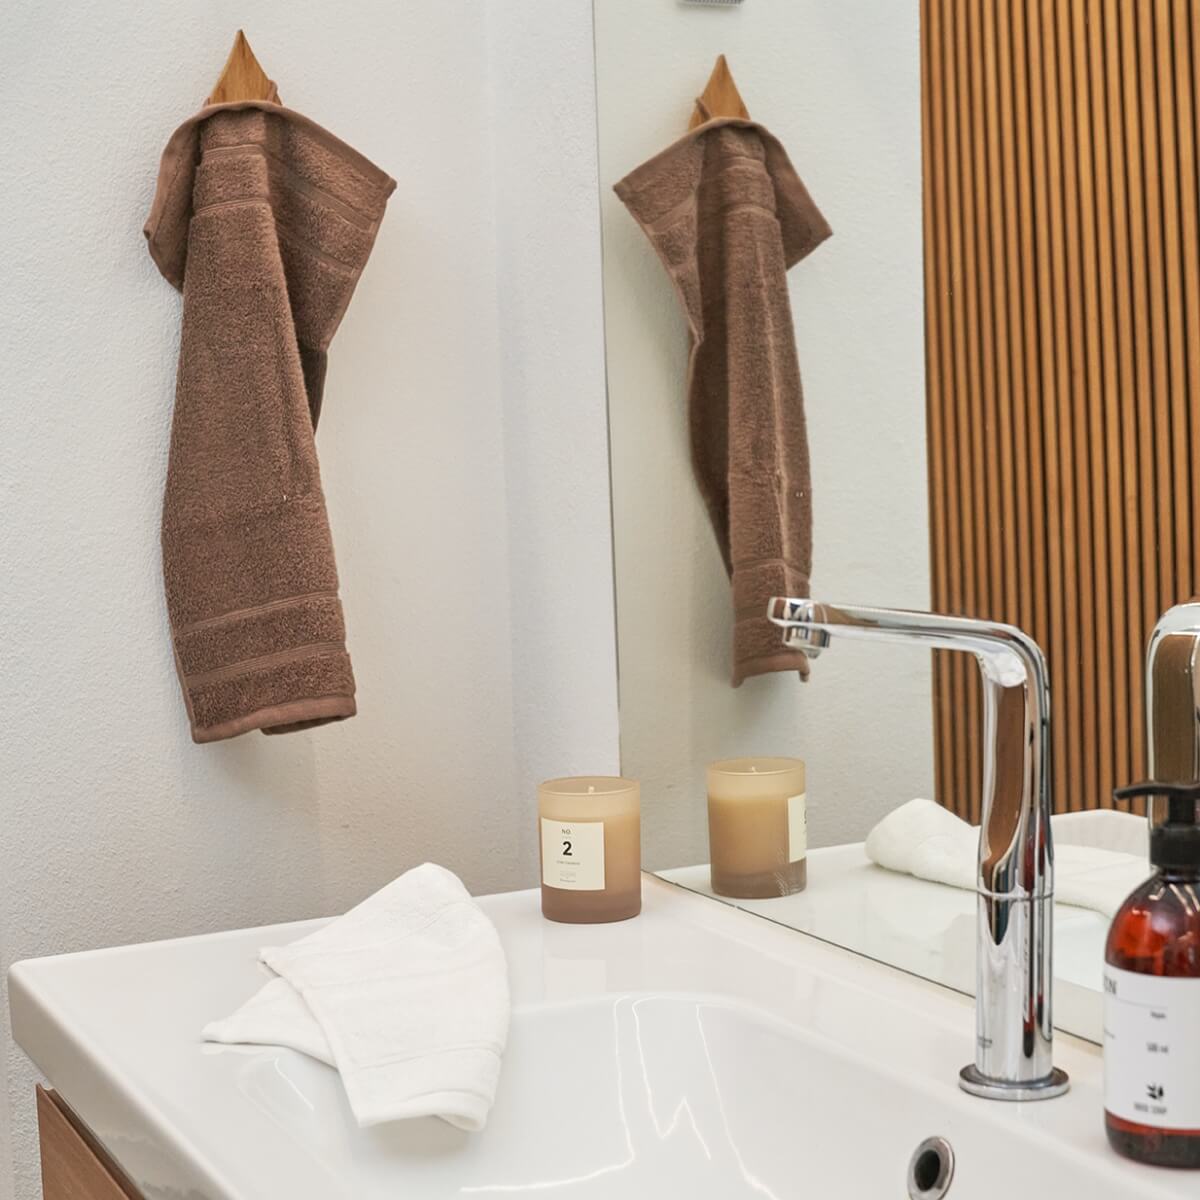 Vask med økologiske håndklæder i henholdsvis brun og hvid farve. Omkring håndklæderne er et duftlys og en sæbe.